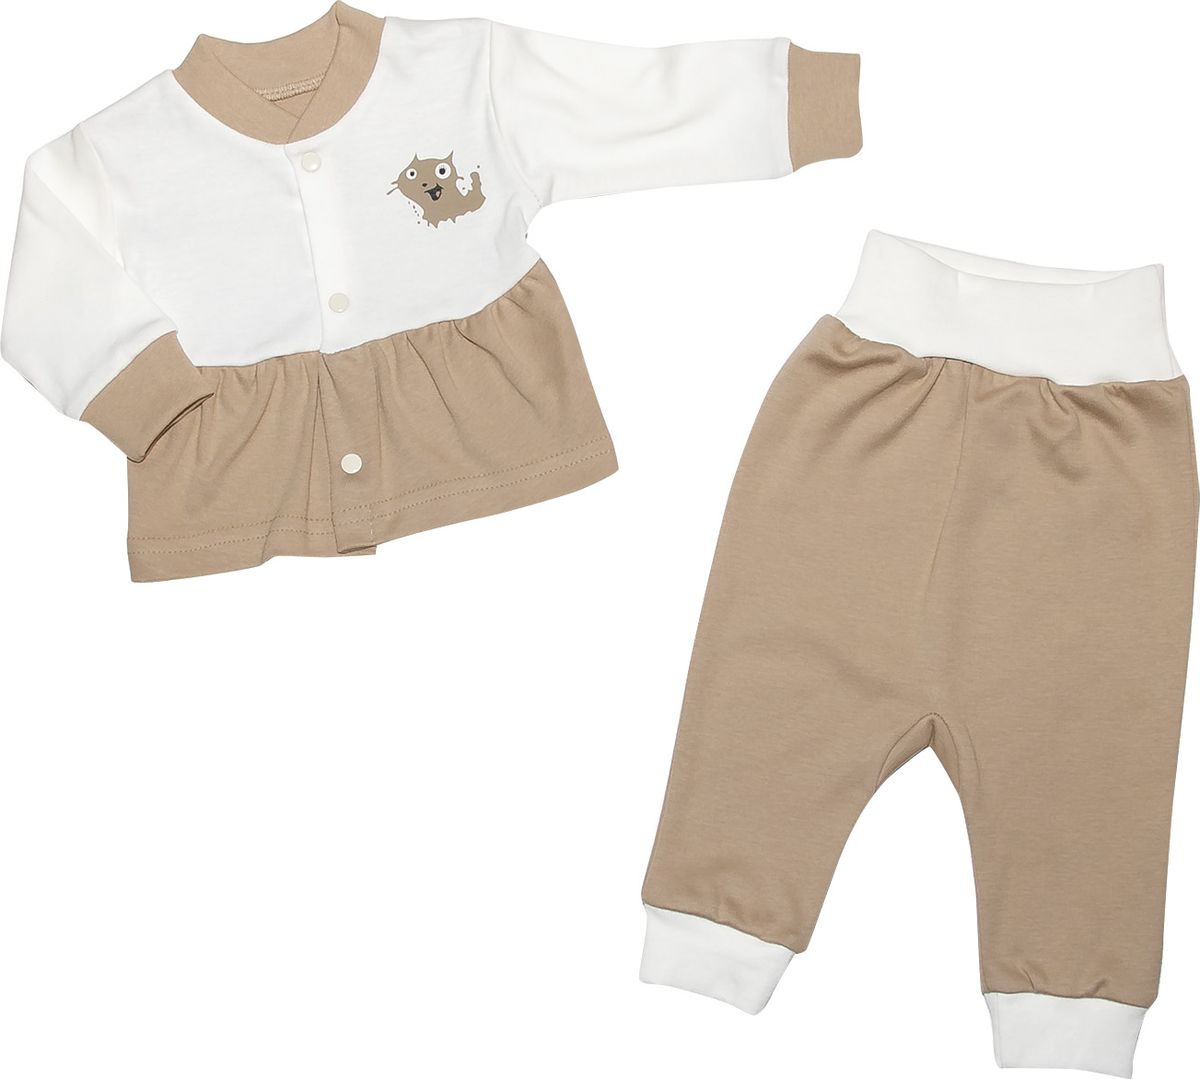 Комплект одежды детский Клякса, цвет: экрю, бежевый, 2 предмета. 37К-5222. Размер 68